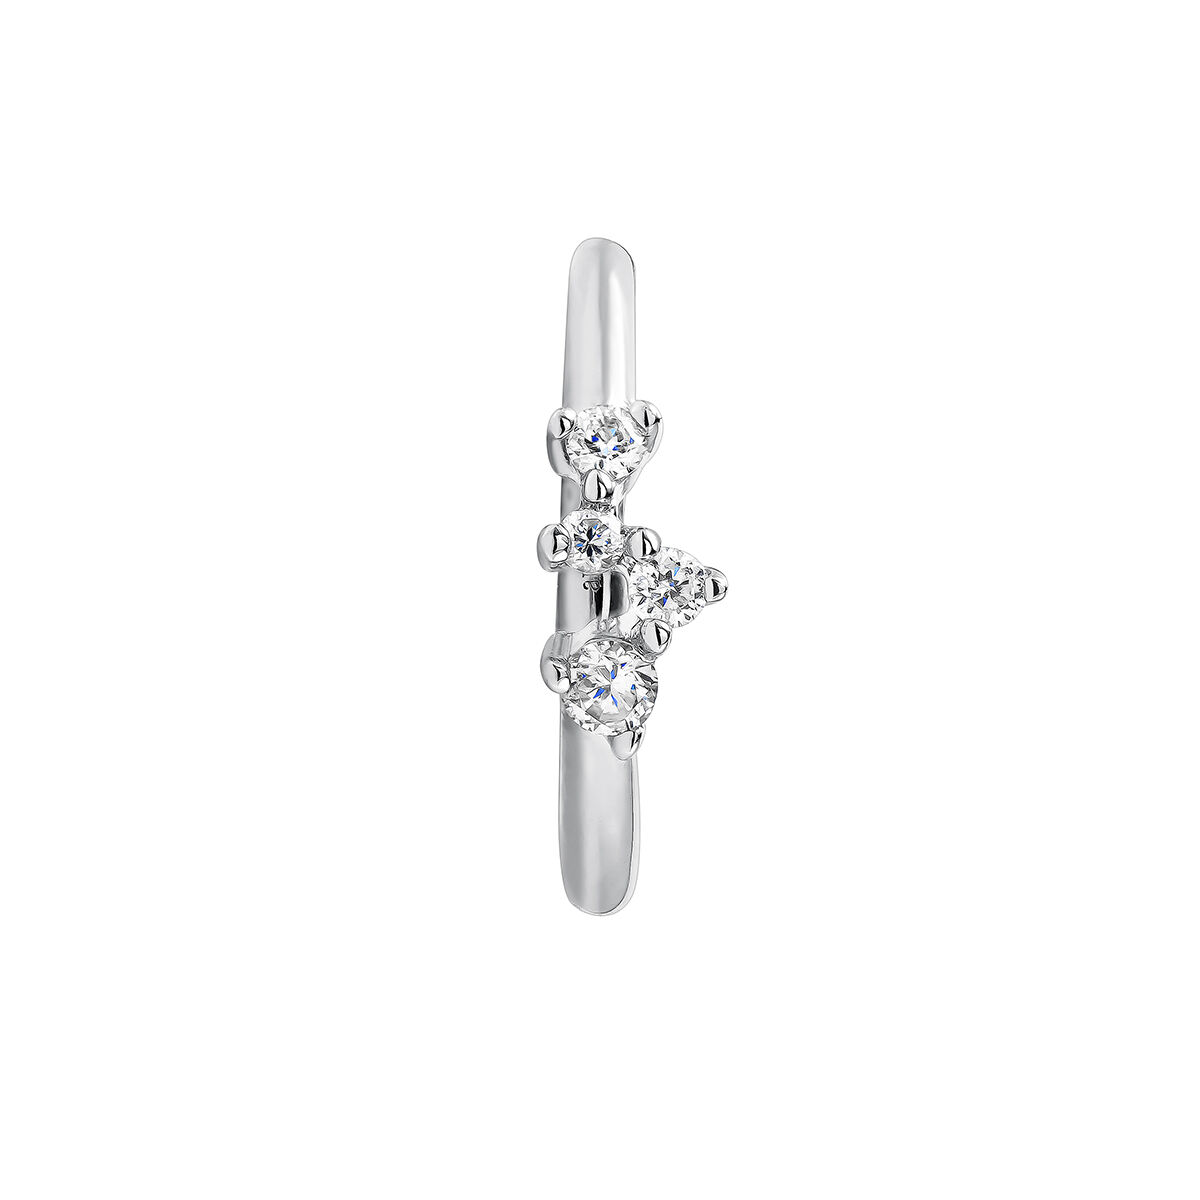 Petite boucle d’oreille créole à l’unité en or blanc 9 ct avec des diamants de 0,035 ct, J04958-01-H, hi-res